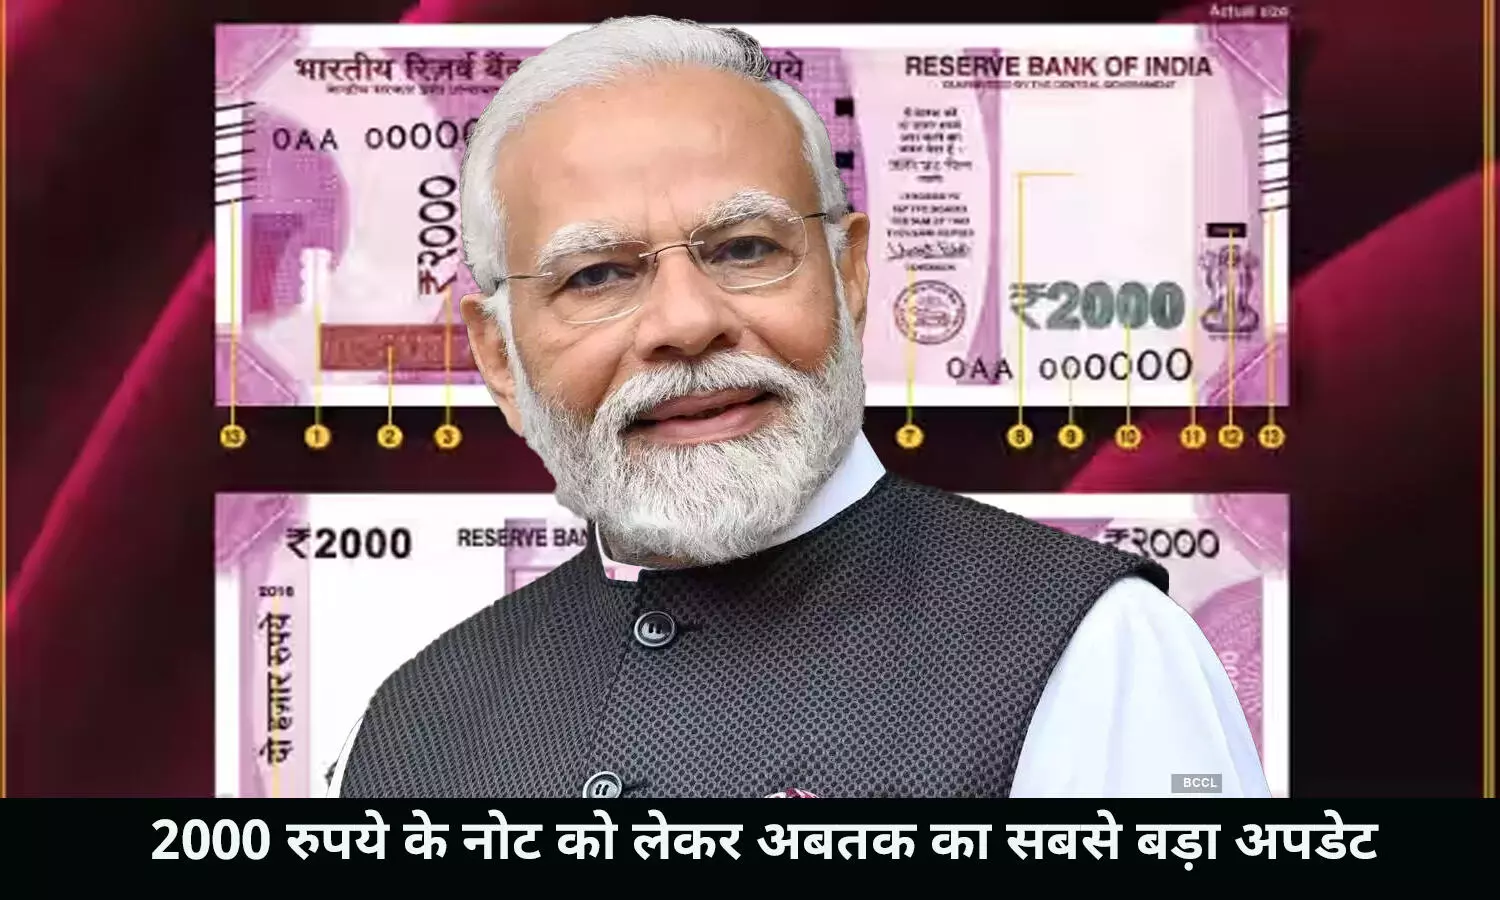 2000 Rupee Note Big Update: 2,000 रुपये के नोट को लेकर अबतक का सबसे बड़ा अपडेट, RBI ने दी जानकारी